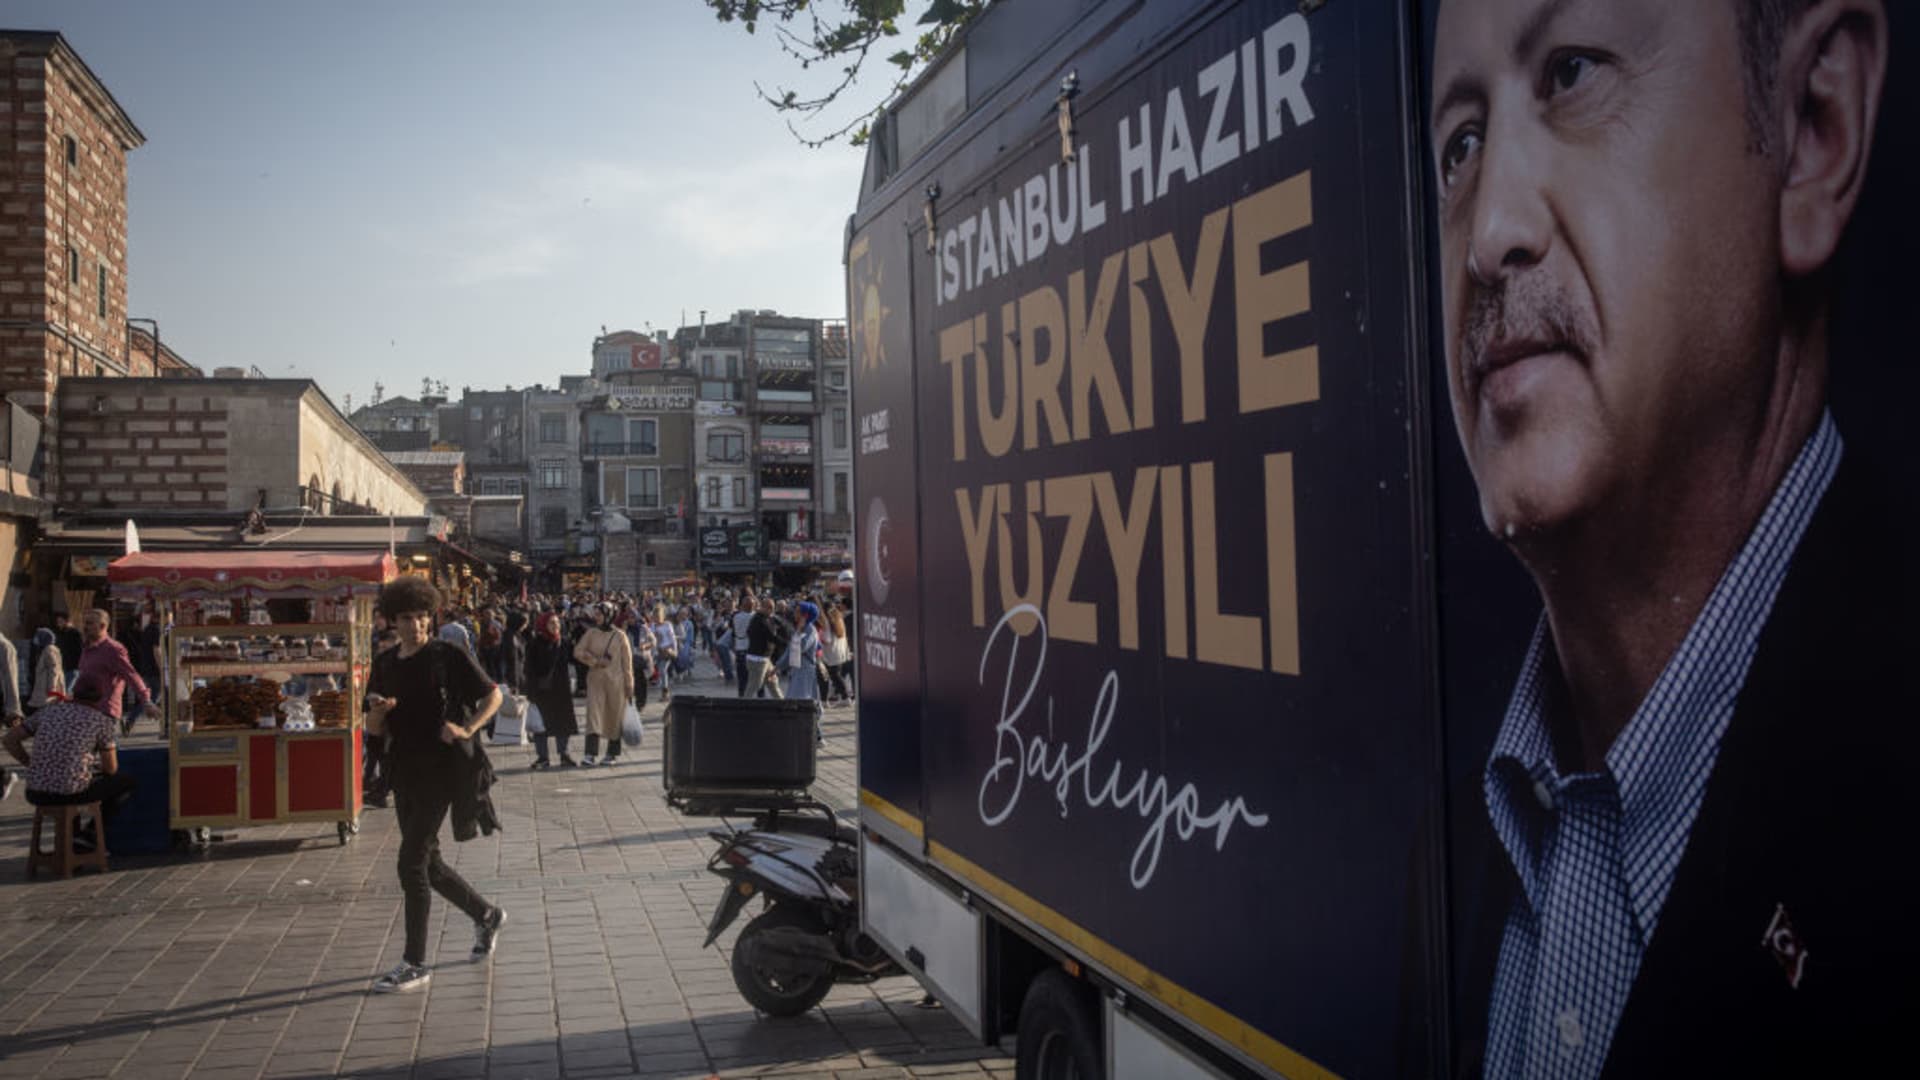 Erdogan ahead after acrimonious campaigns